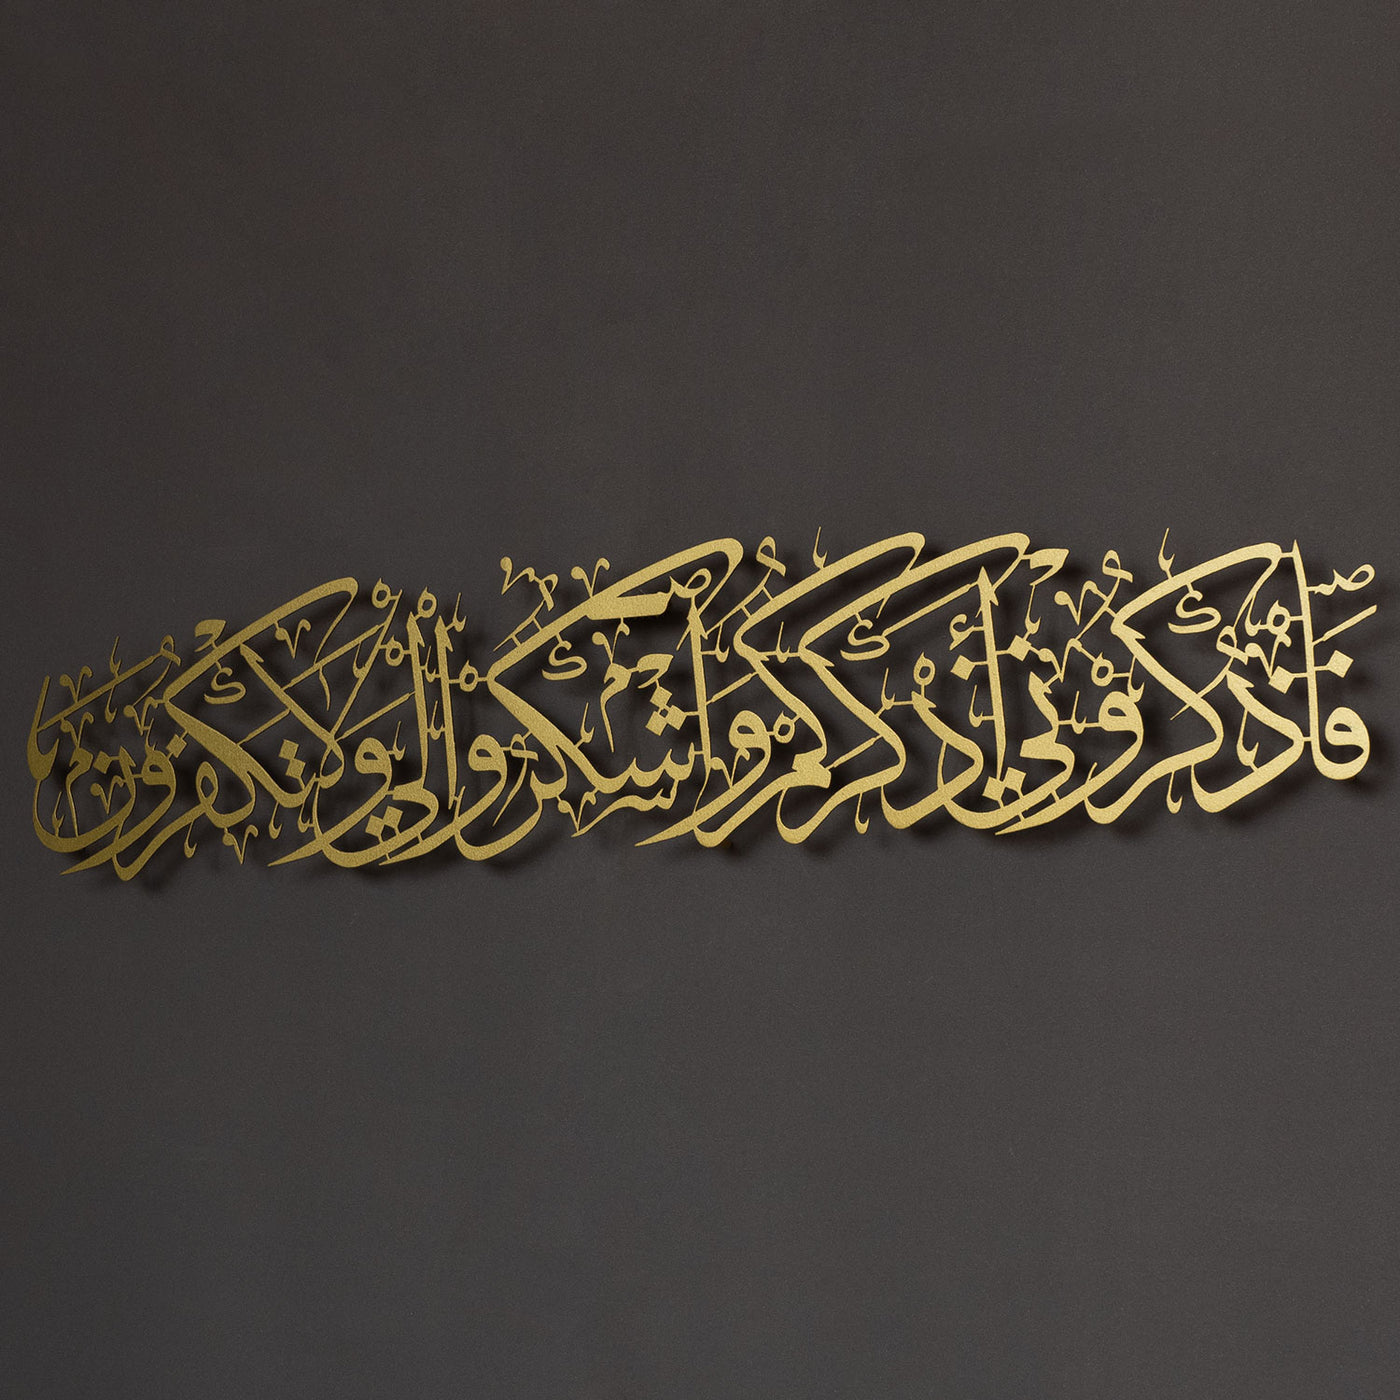 Şükür Duası Yazılı Metal Duvar Tablosu - WAM165